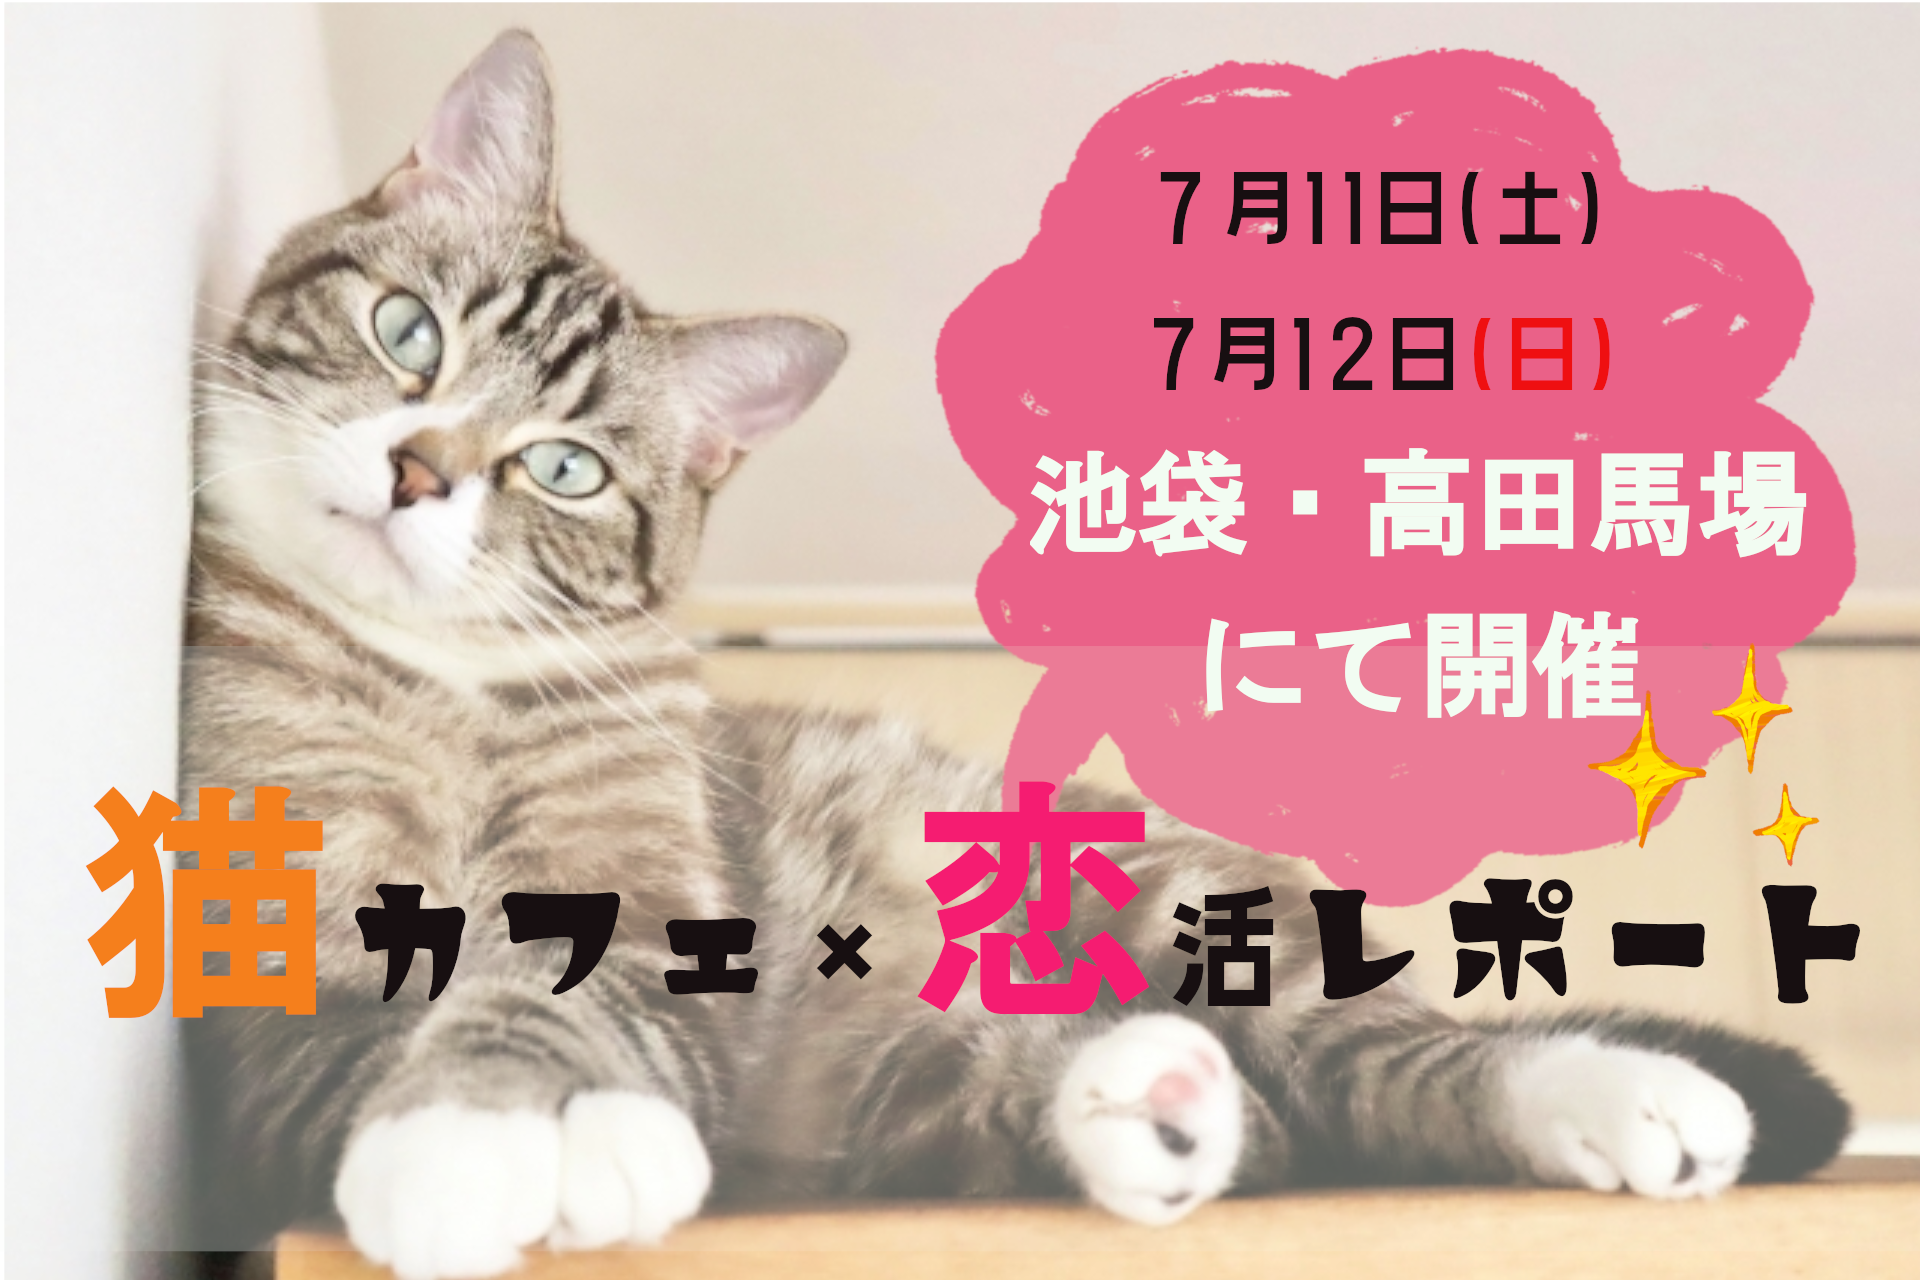 ７月11 土 ７月12日 日 高田馬場 池袋で開催 猫カフェ 恋活コン 街コンalice